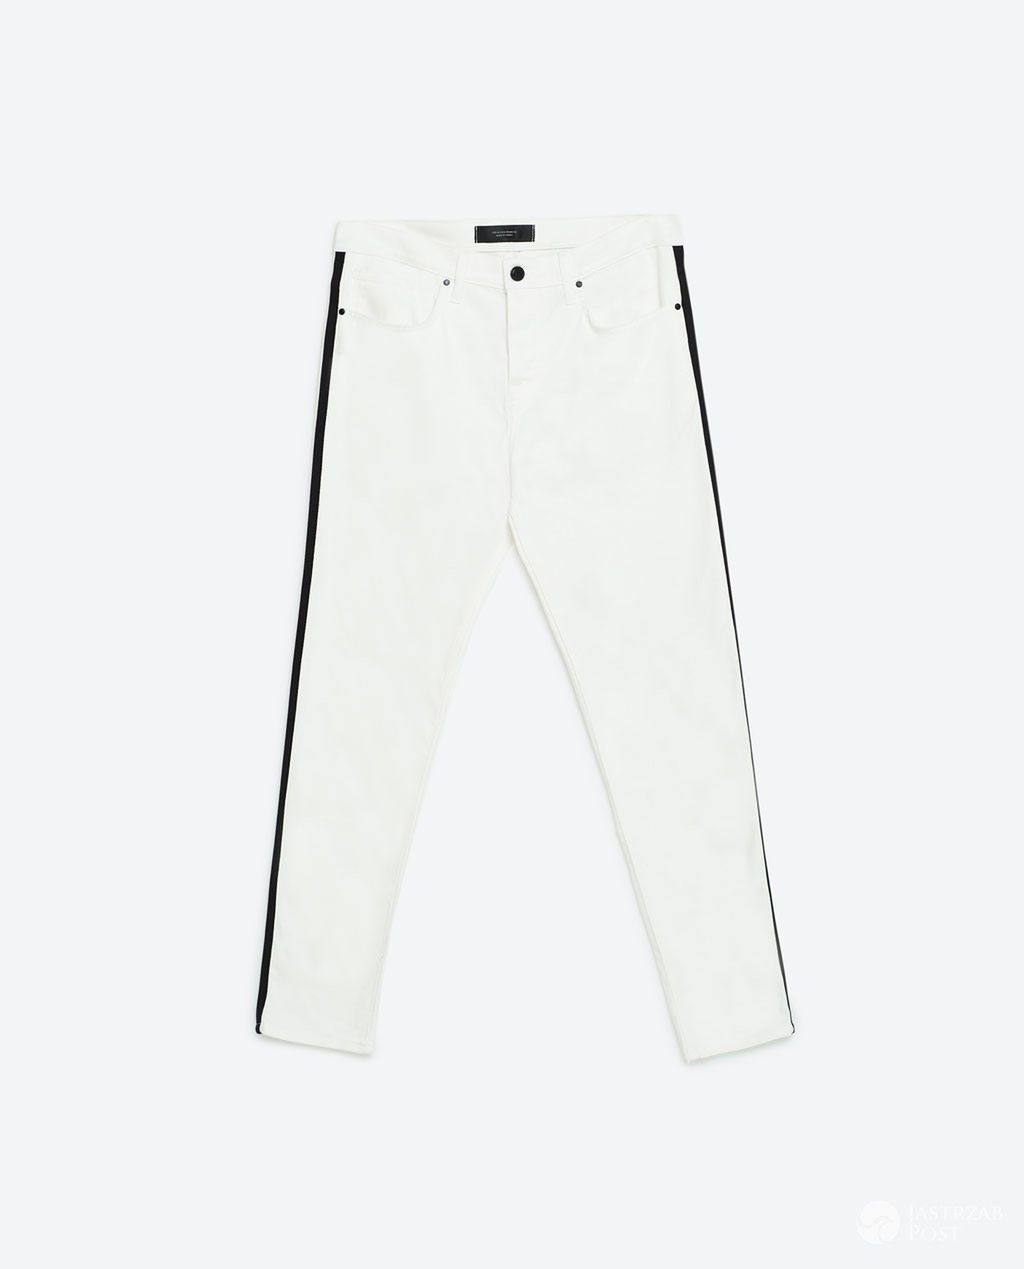 ZARA wyprzedaż 2016 - białe spodnie jeansowe - 99,90 zł